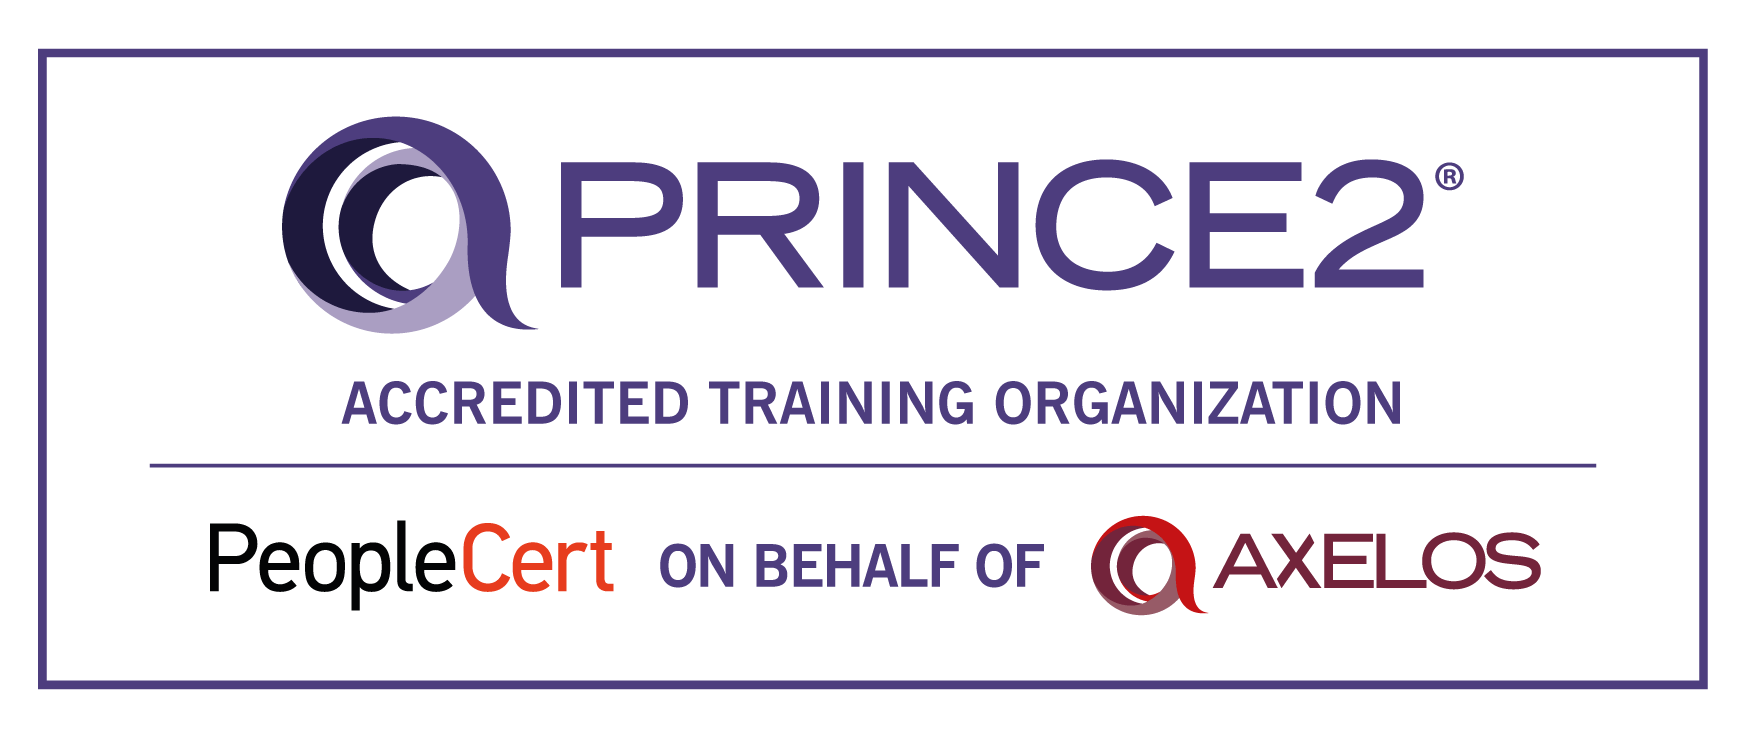 PRINCE2_ATO-logo-1